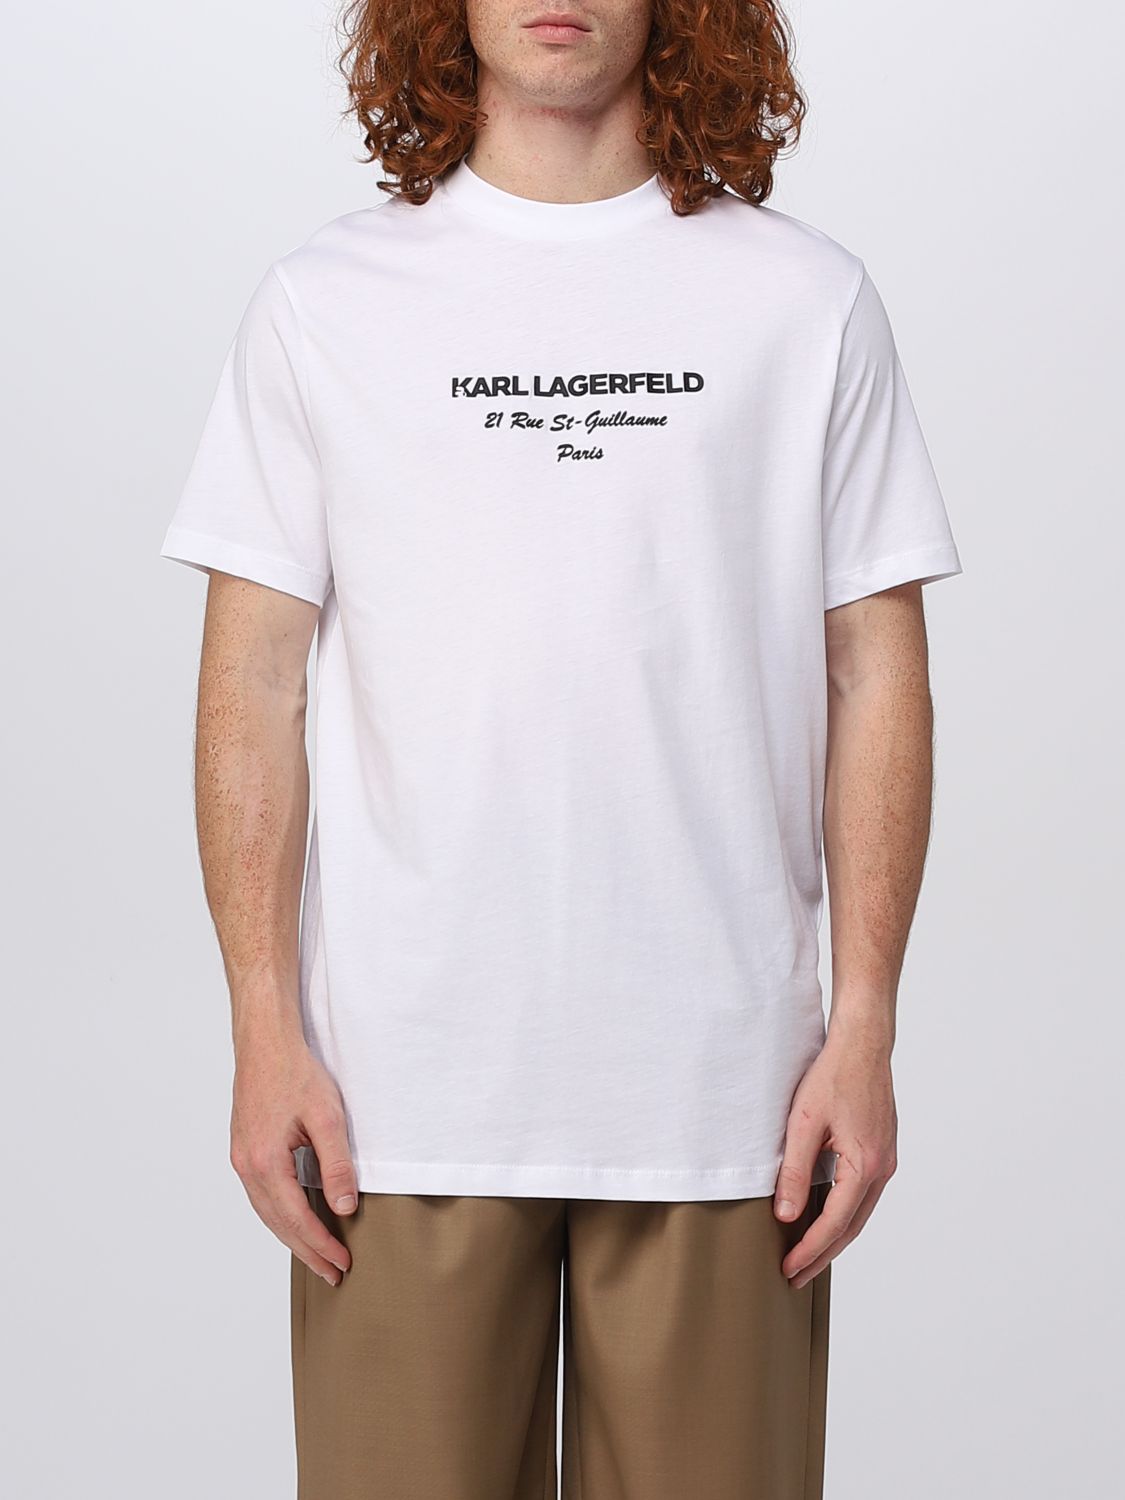 in plaats daarvan flauw Pebish KARL LAGERFELD: t-shirt for man - White | Karl Lagerfeld t-shirt  755035532224 online on GIGLIO.COM